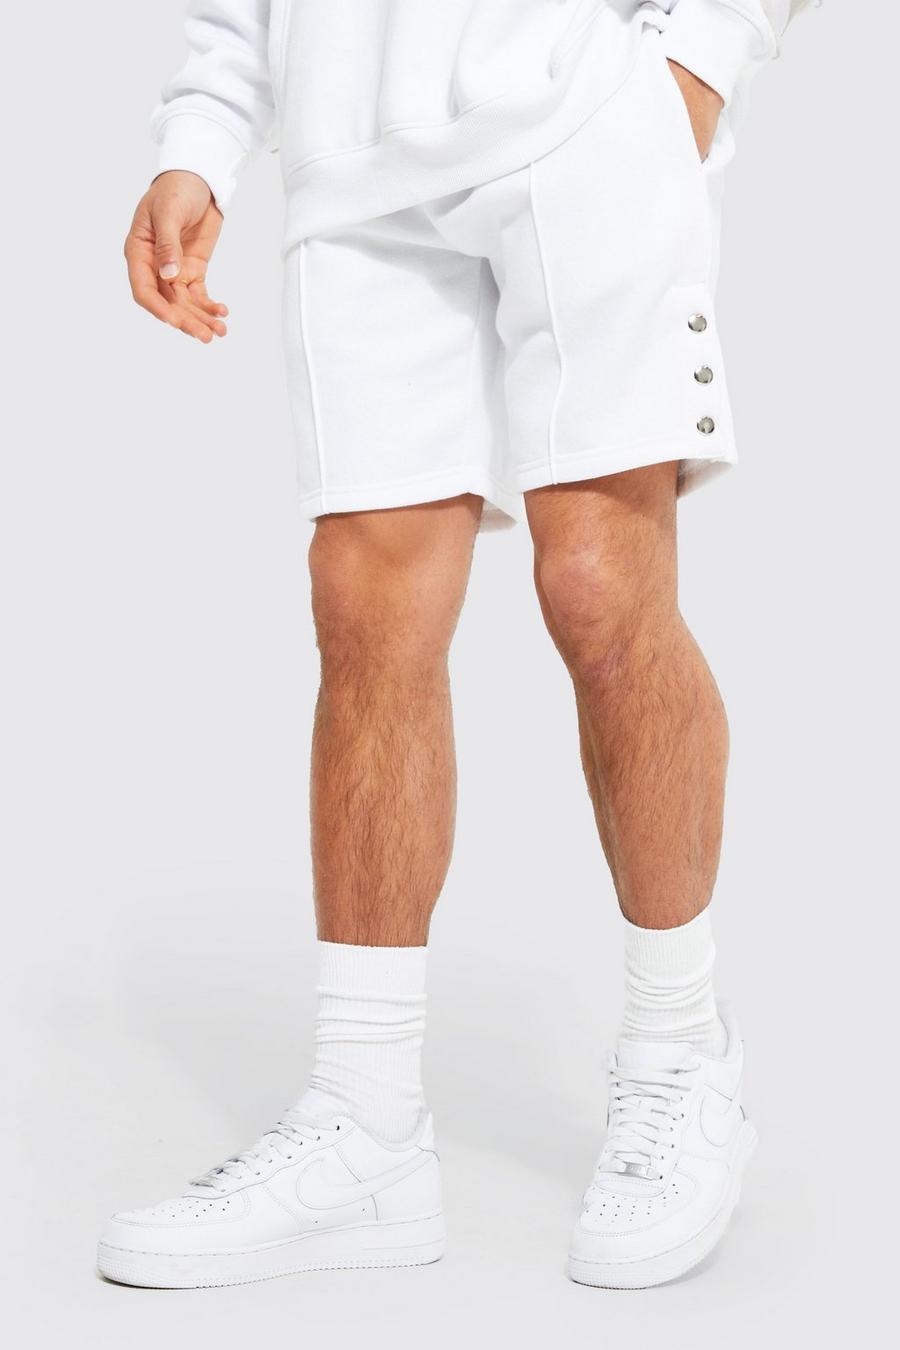 Pantalón corto reciclado holgado de tela jersey con alforza y botones de presión, White bianco